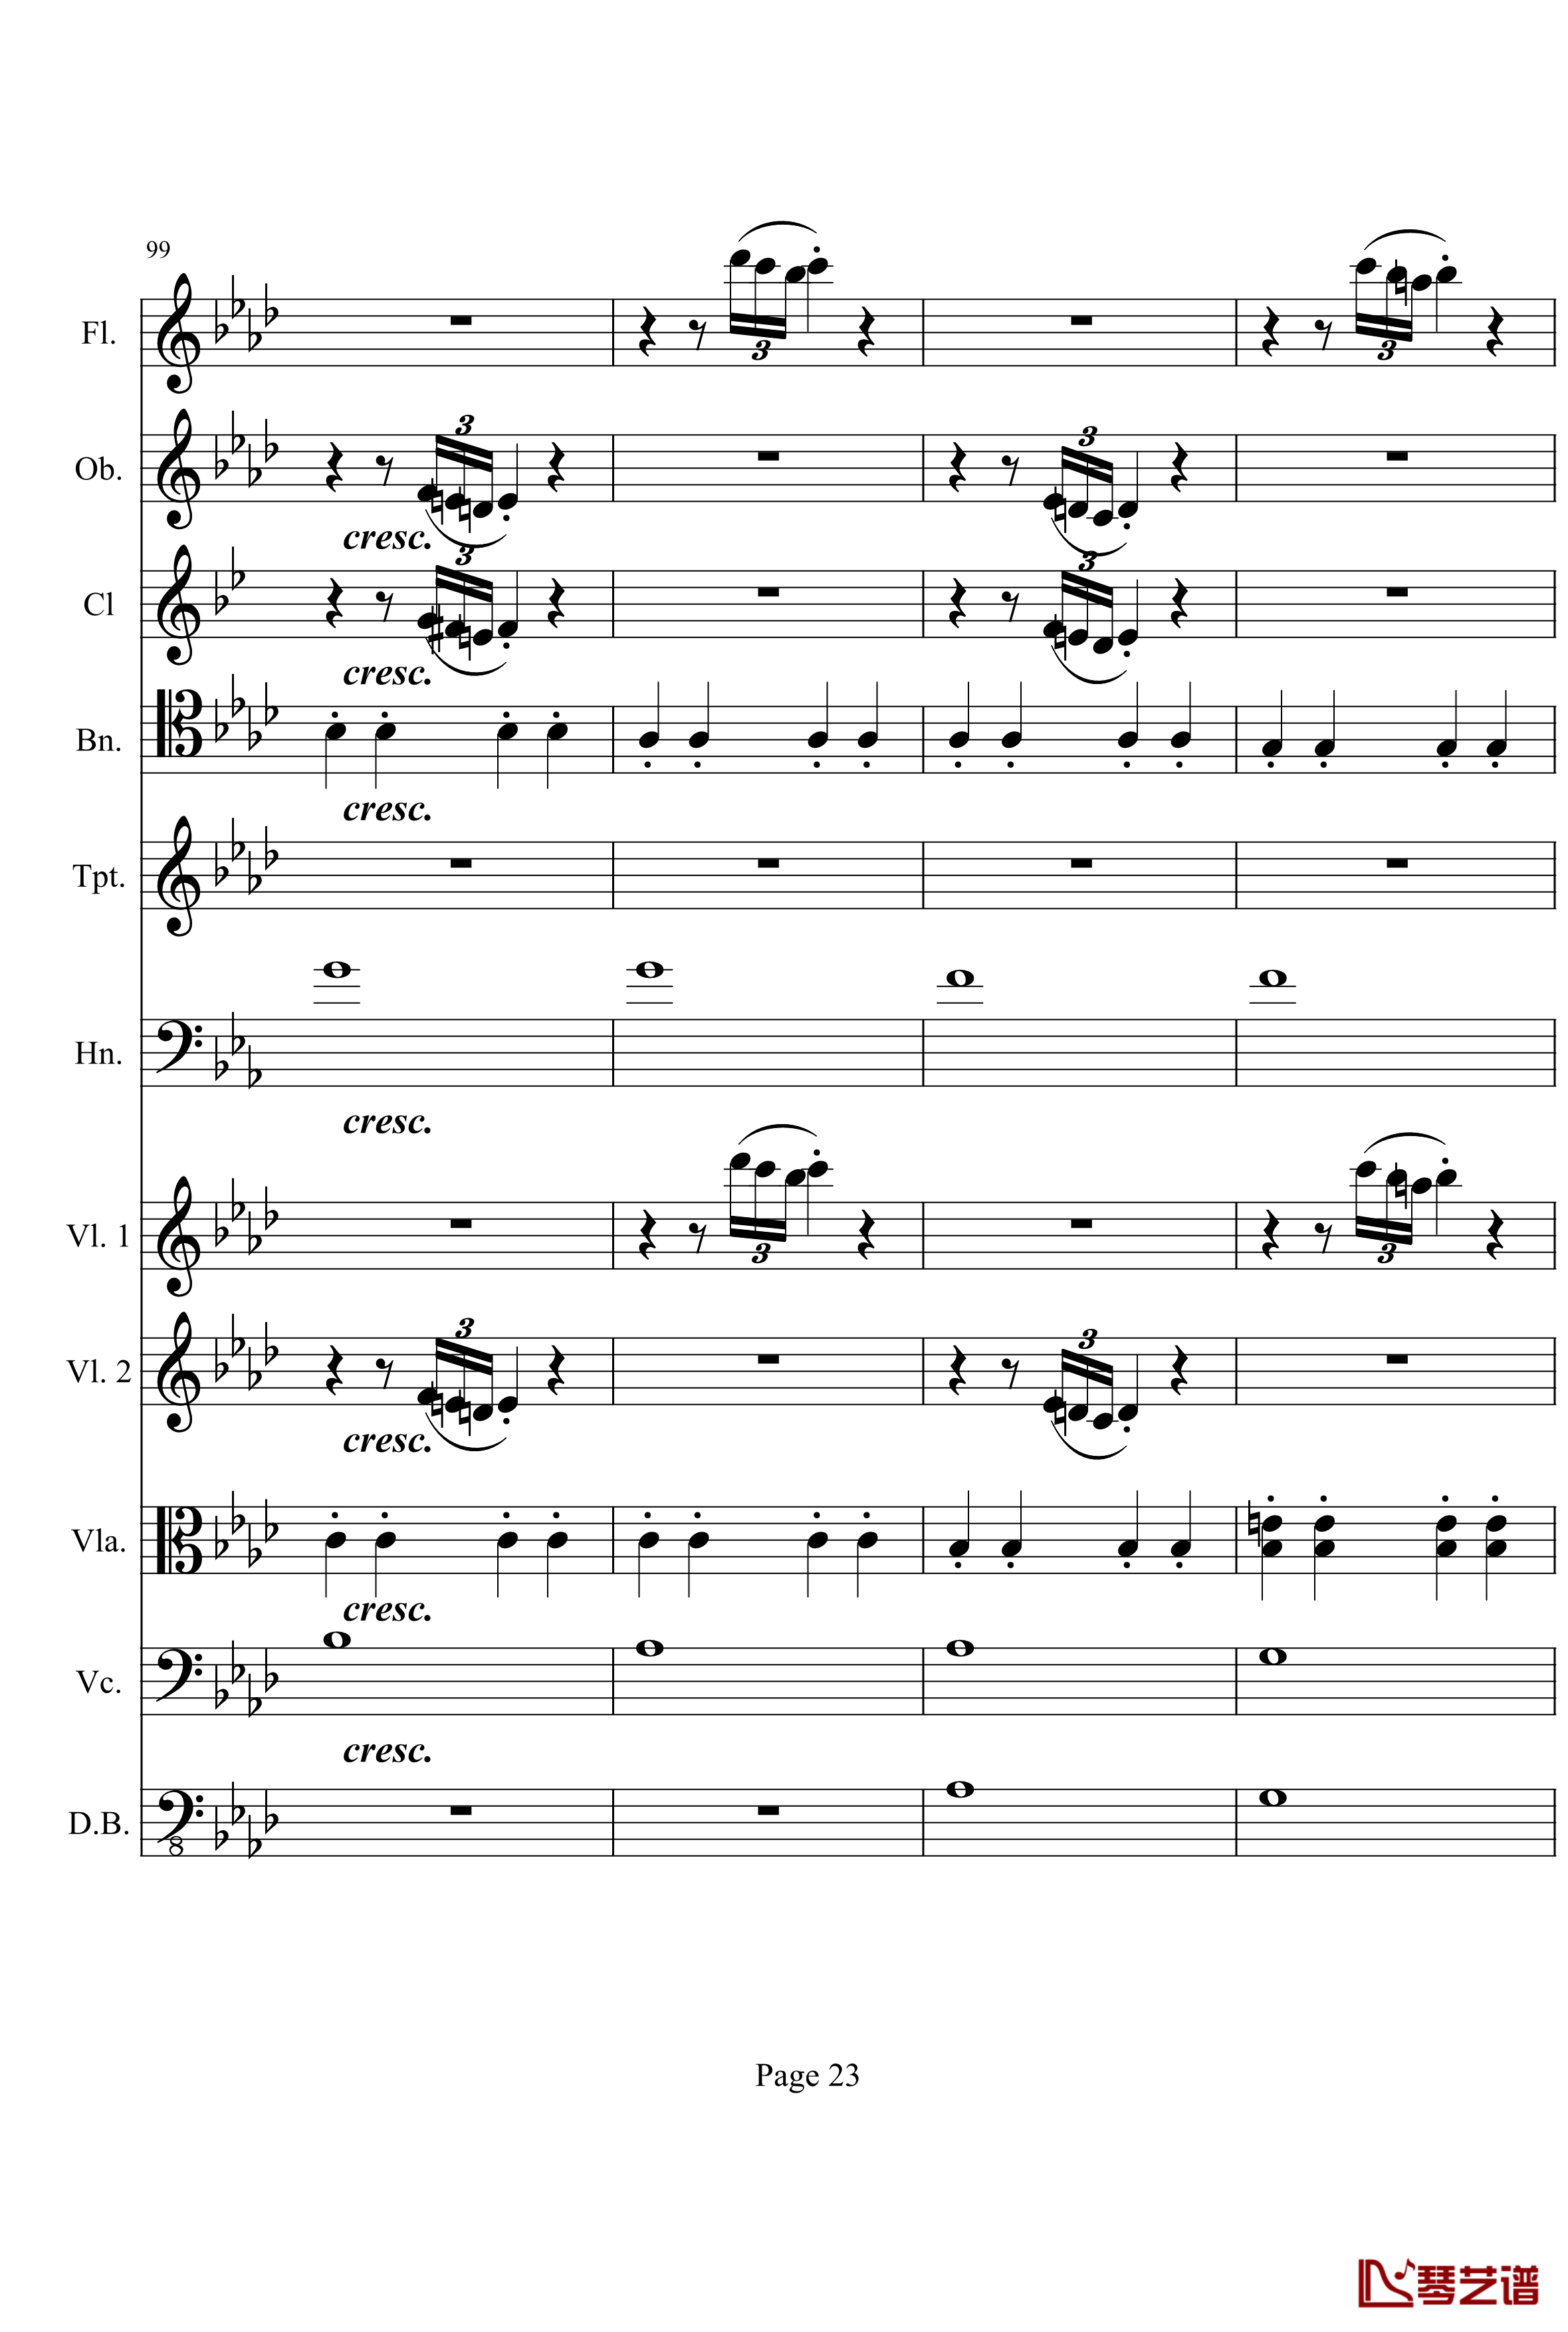 奏鸣曲之交响钢琴谱-第1首-Ⅰ-贝多芬-beethoven23